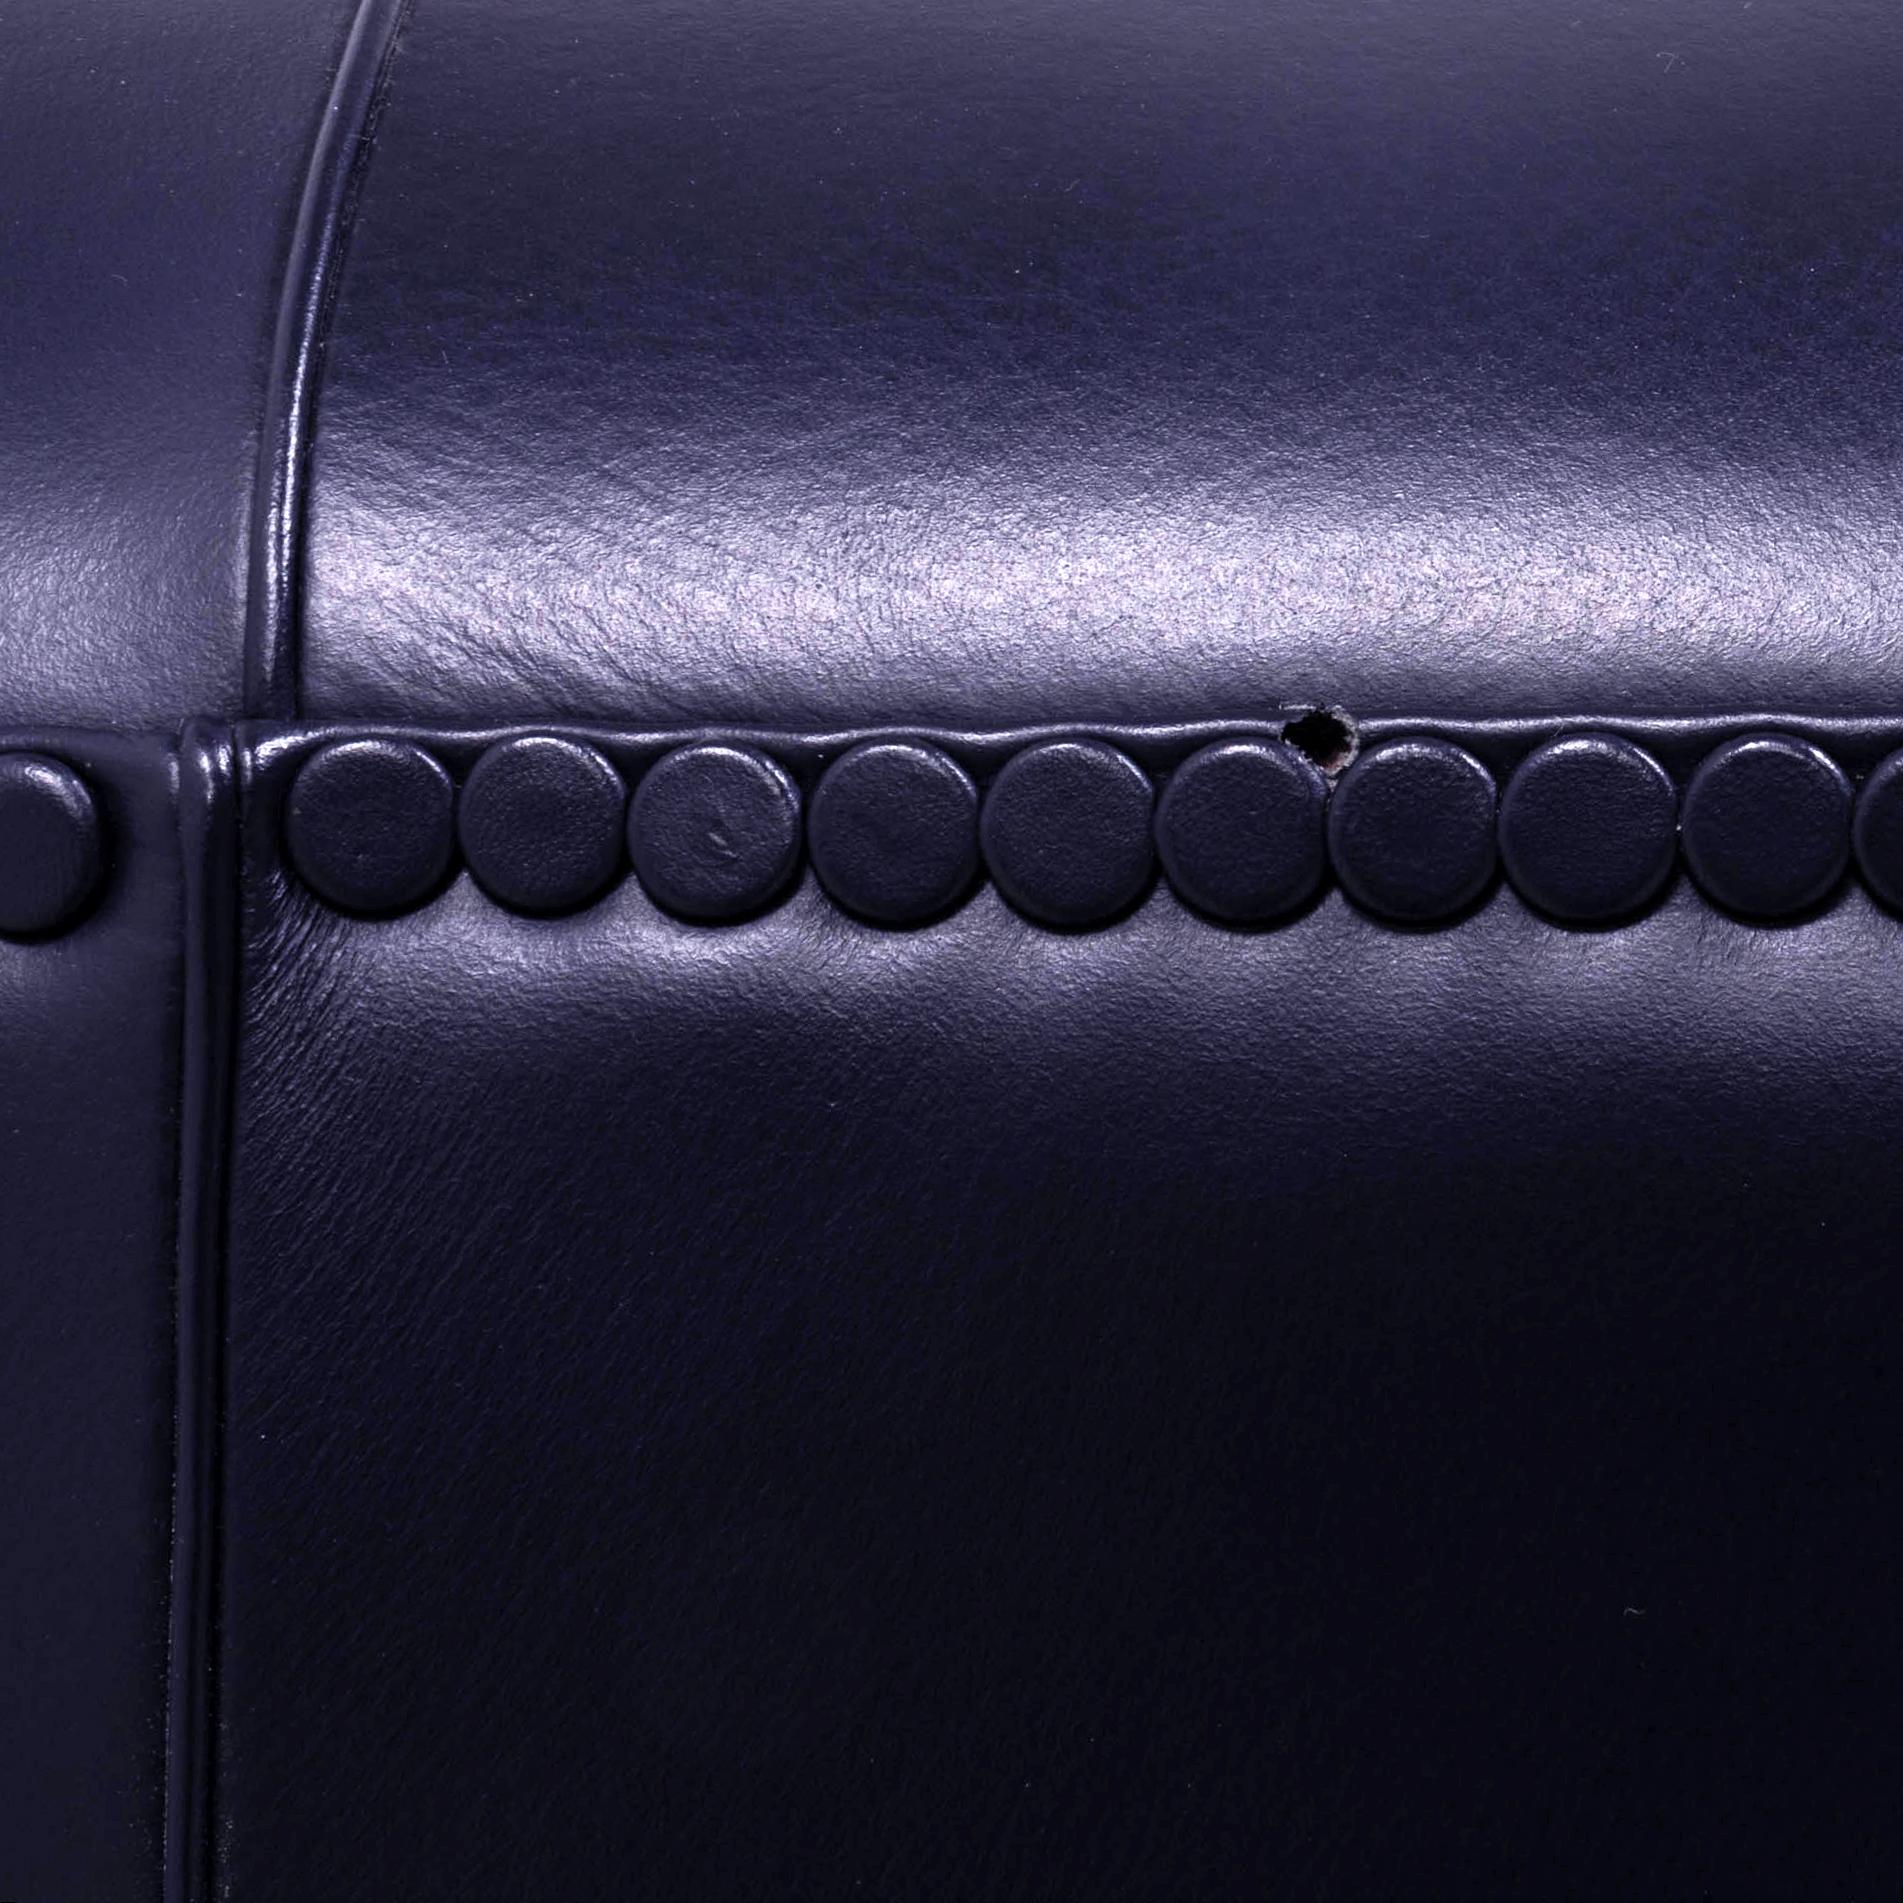 Poltrona Frau, Art Deco style Vanity Fair Black Leather Sofa and armchairs set 8